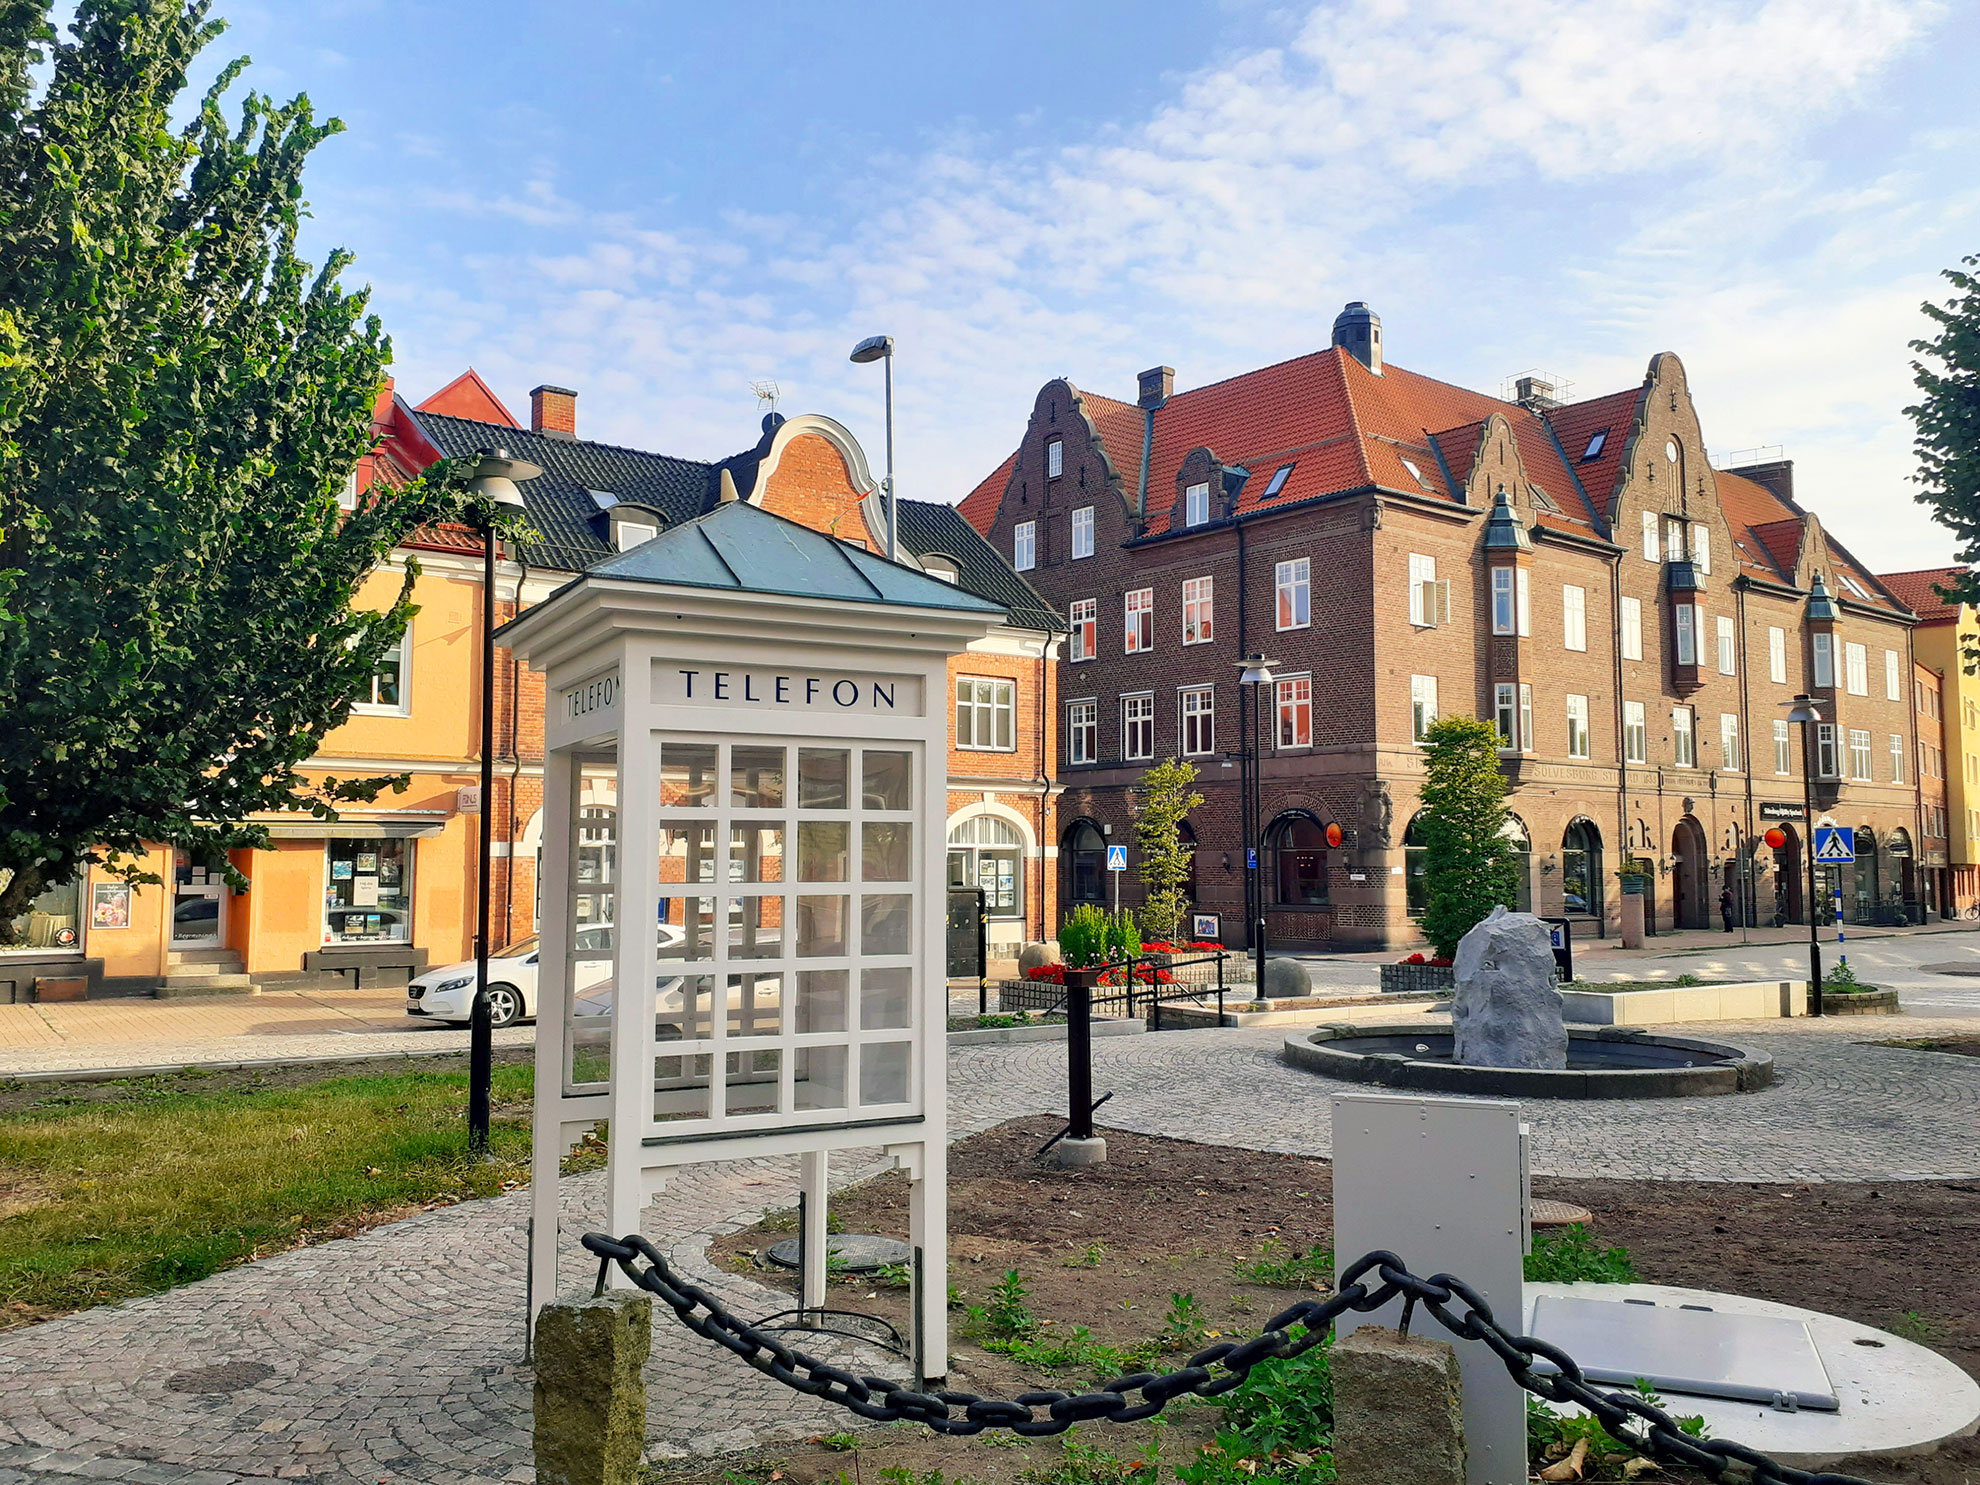 Sölvesborg ist eine Stadt entlang des Sydostleden